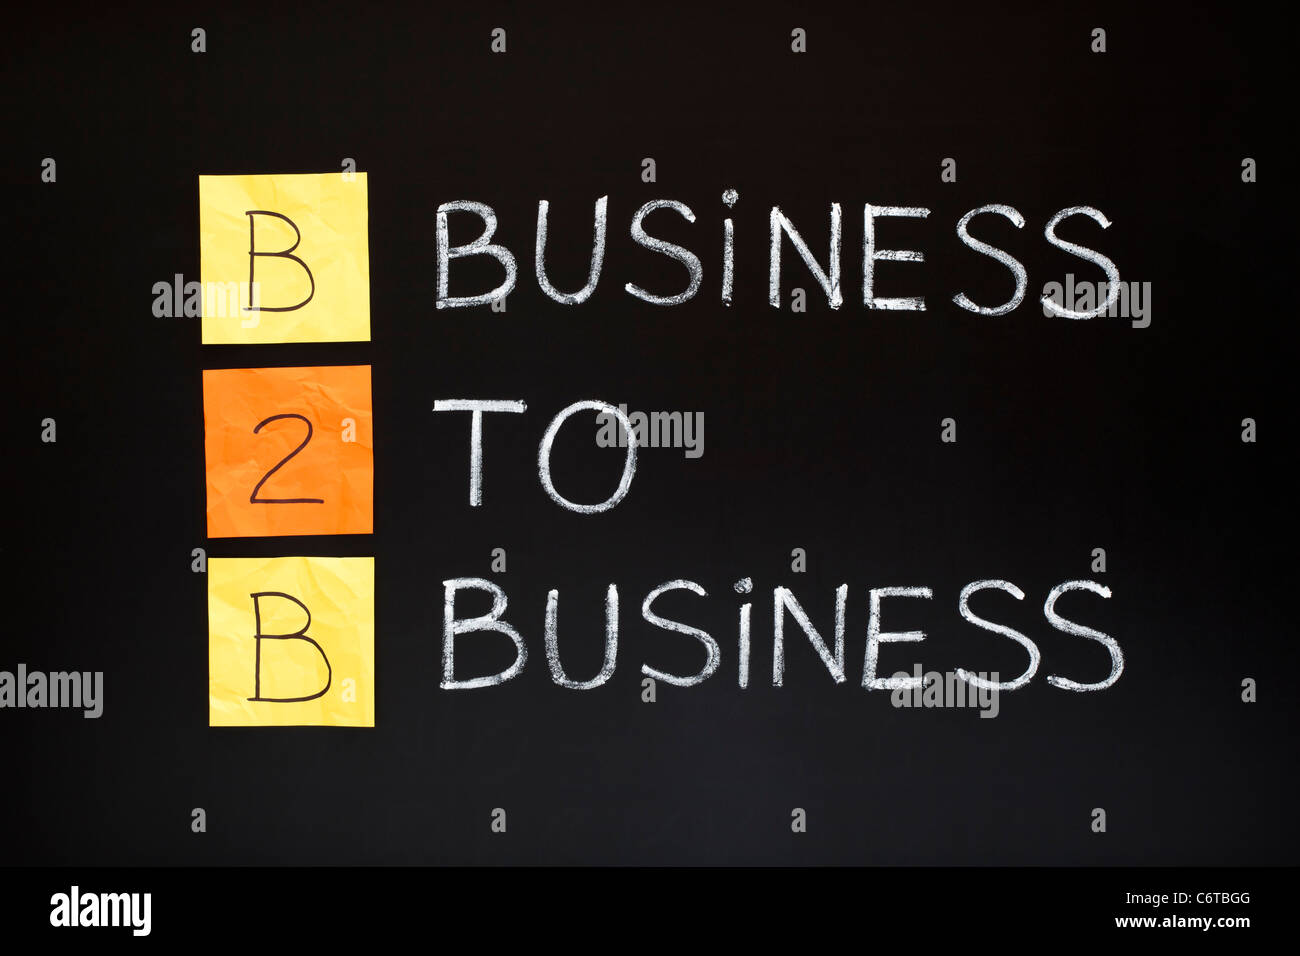 Abkürzung von B2B - BUSINESS TO BUSINESS. Konzept mit Haftnotizen und weiße Kreide auf einer Tafel. Stockfoto